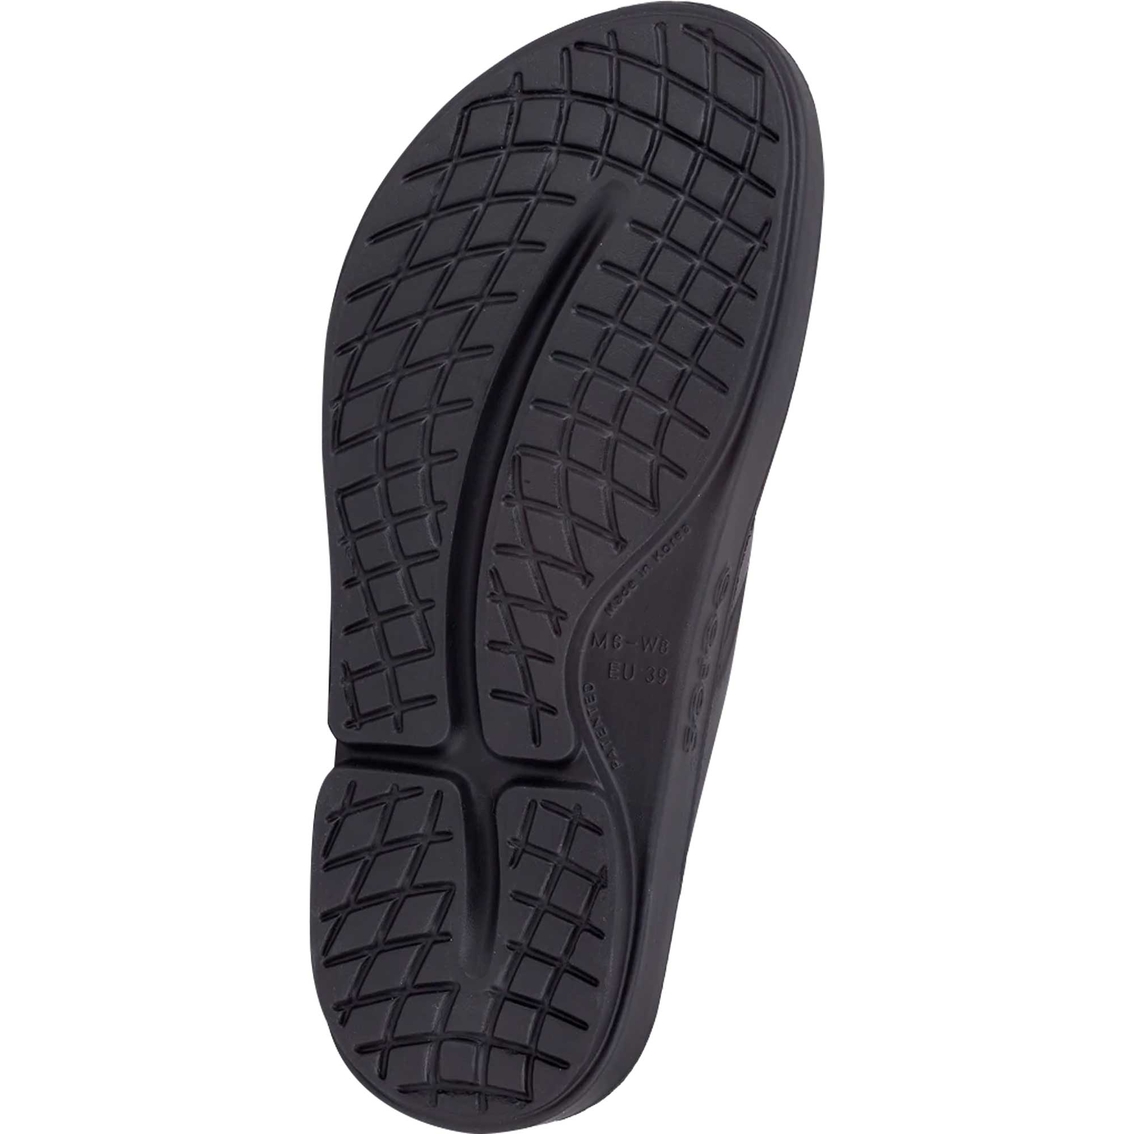 OOFOS Men's Ooriginal Sandals - Image 5 of 7